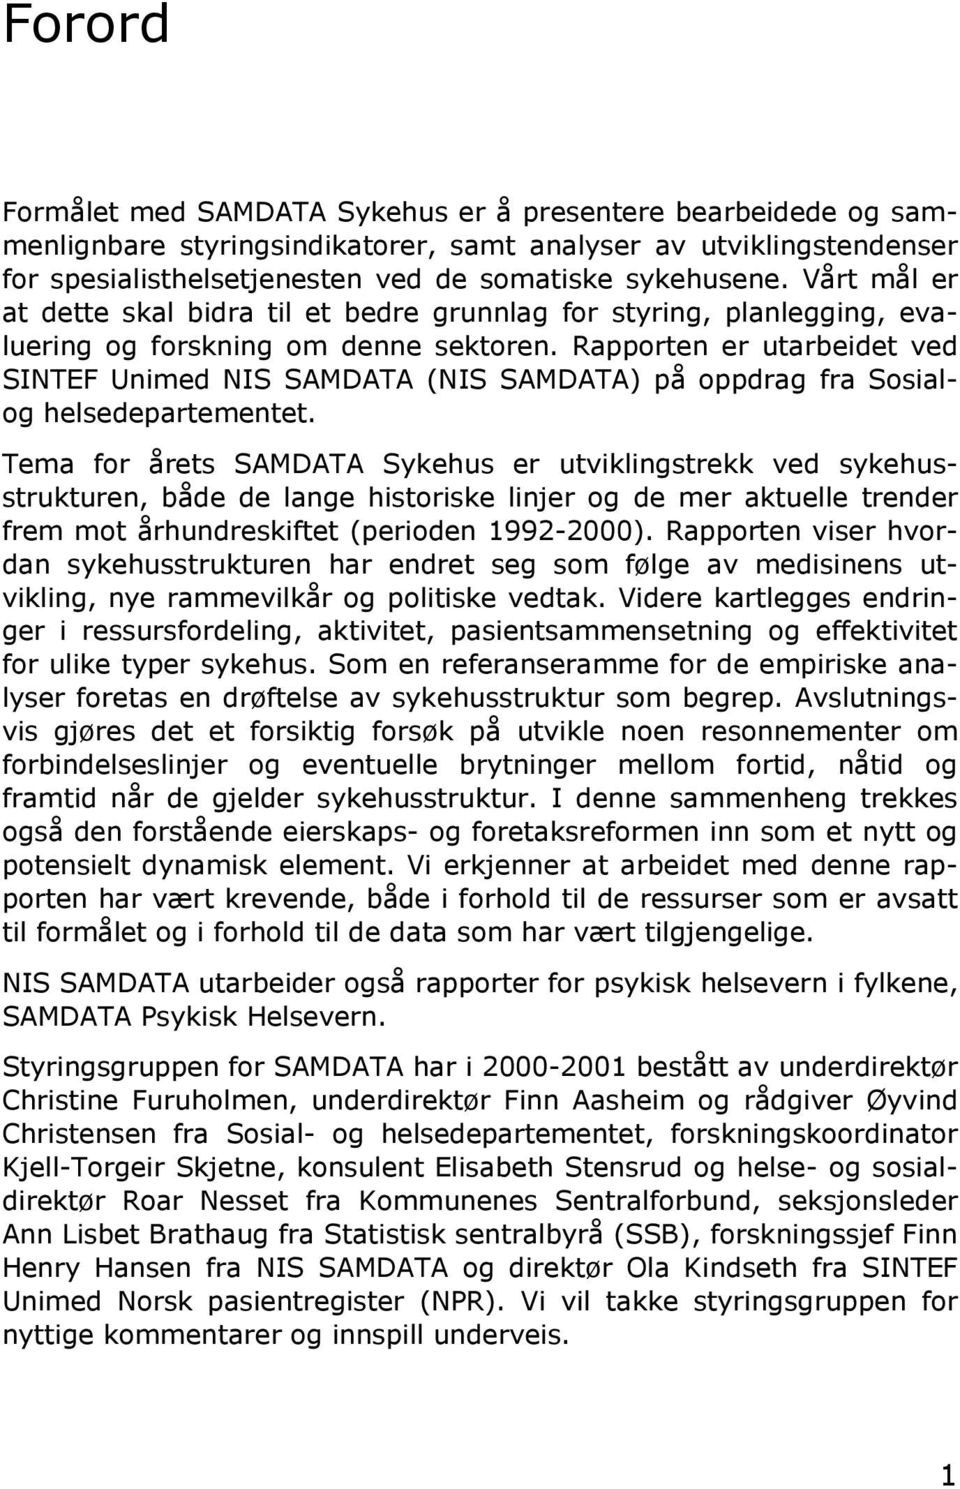 Rapporten er utarbeidet ved SINTEF Unimed NIS SAMDATA (NIS SAMDATA) på oppdrag fra Sosialog helsedepartementet.